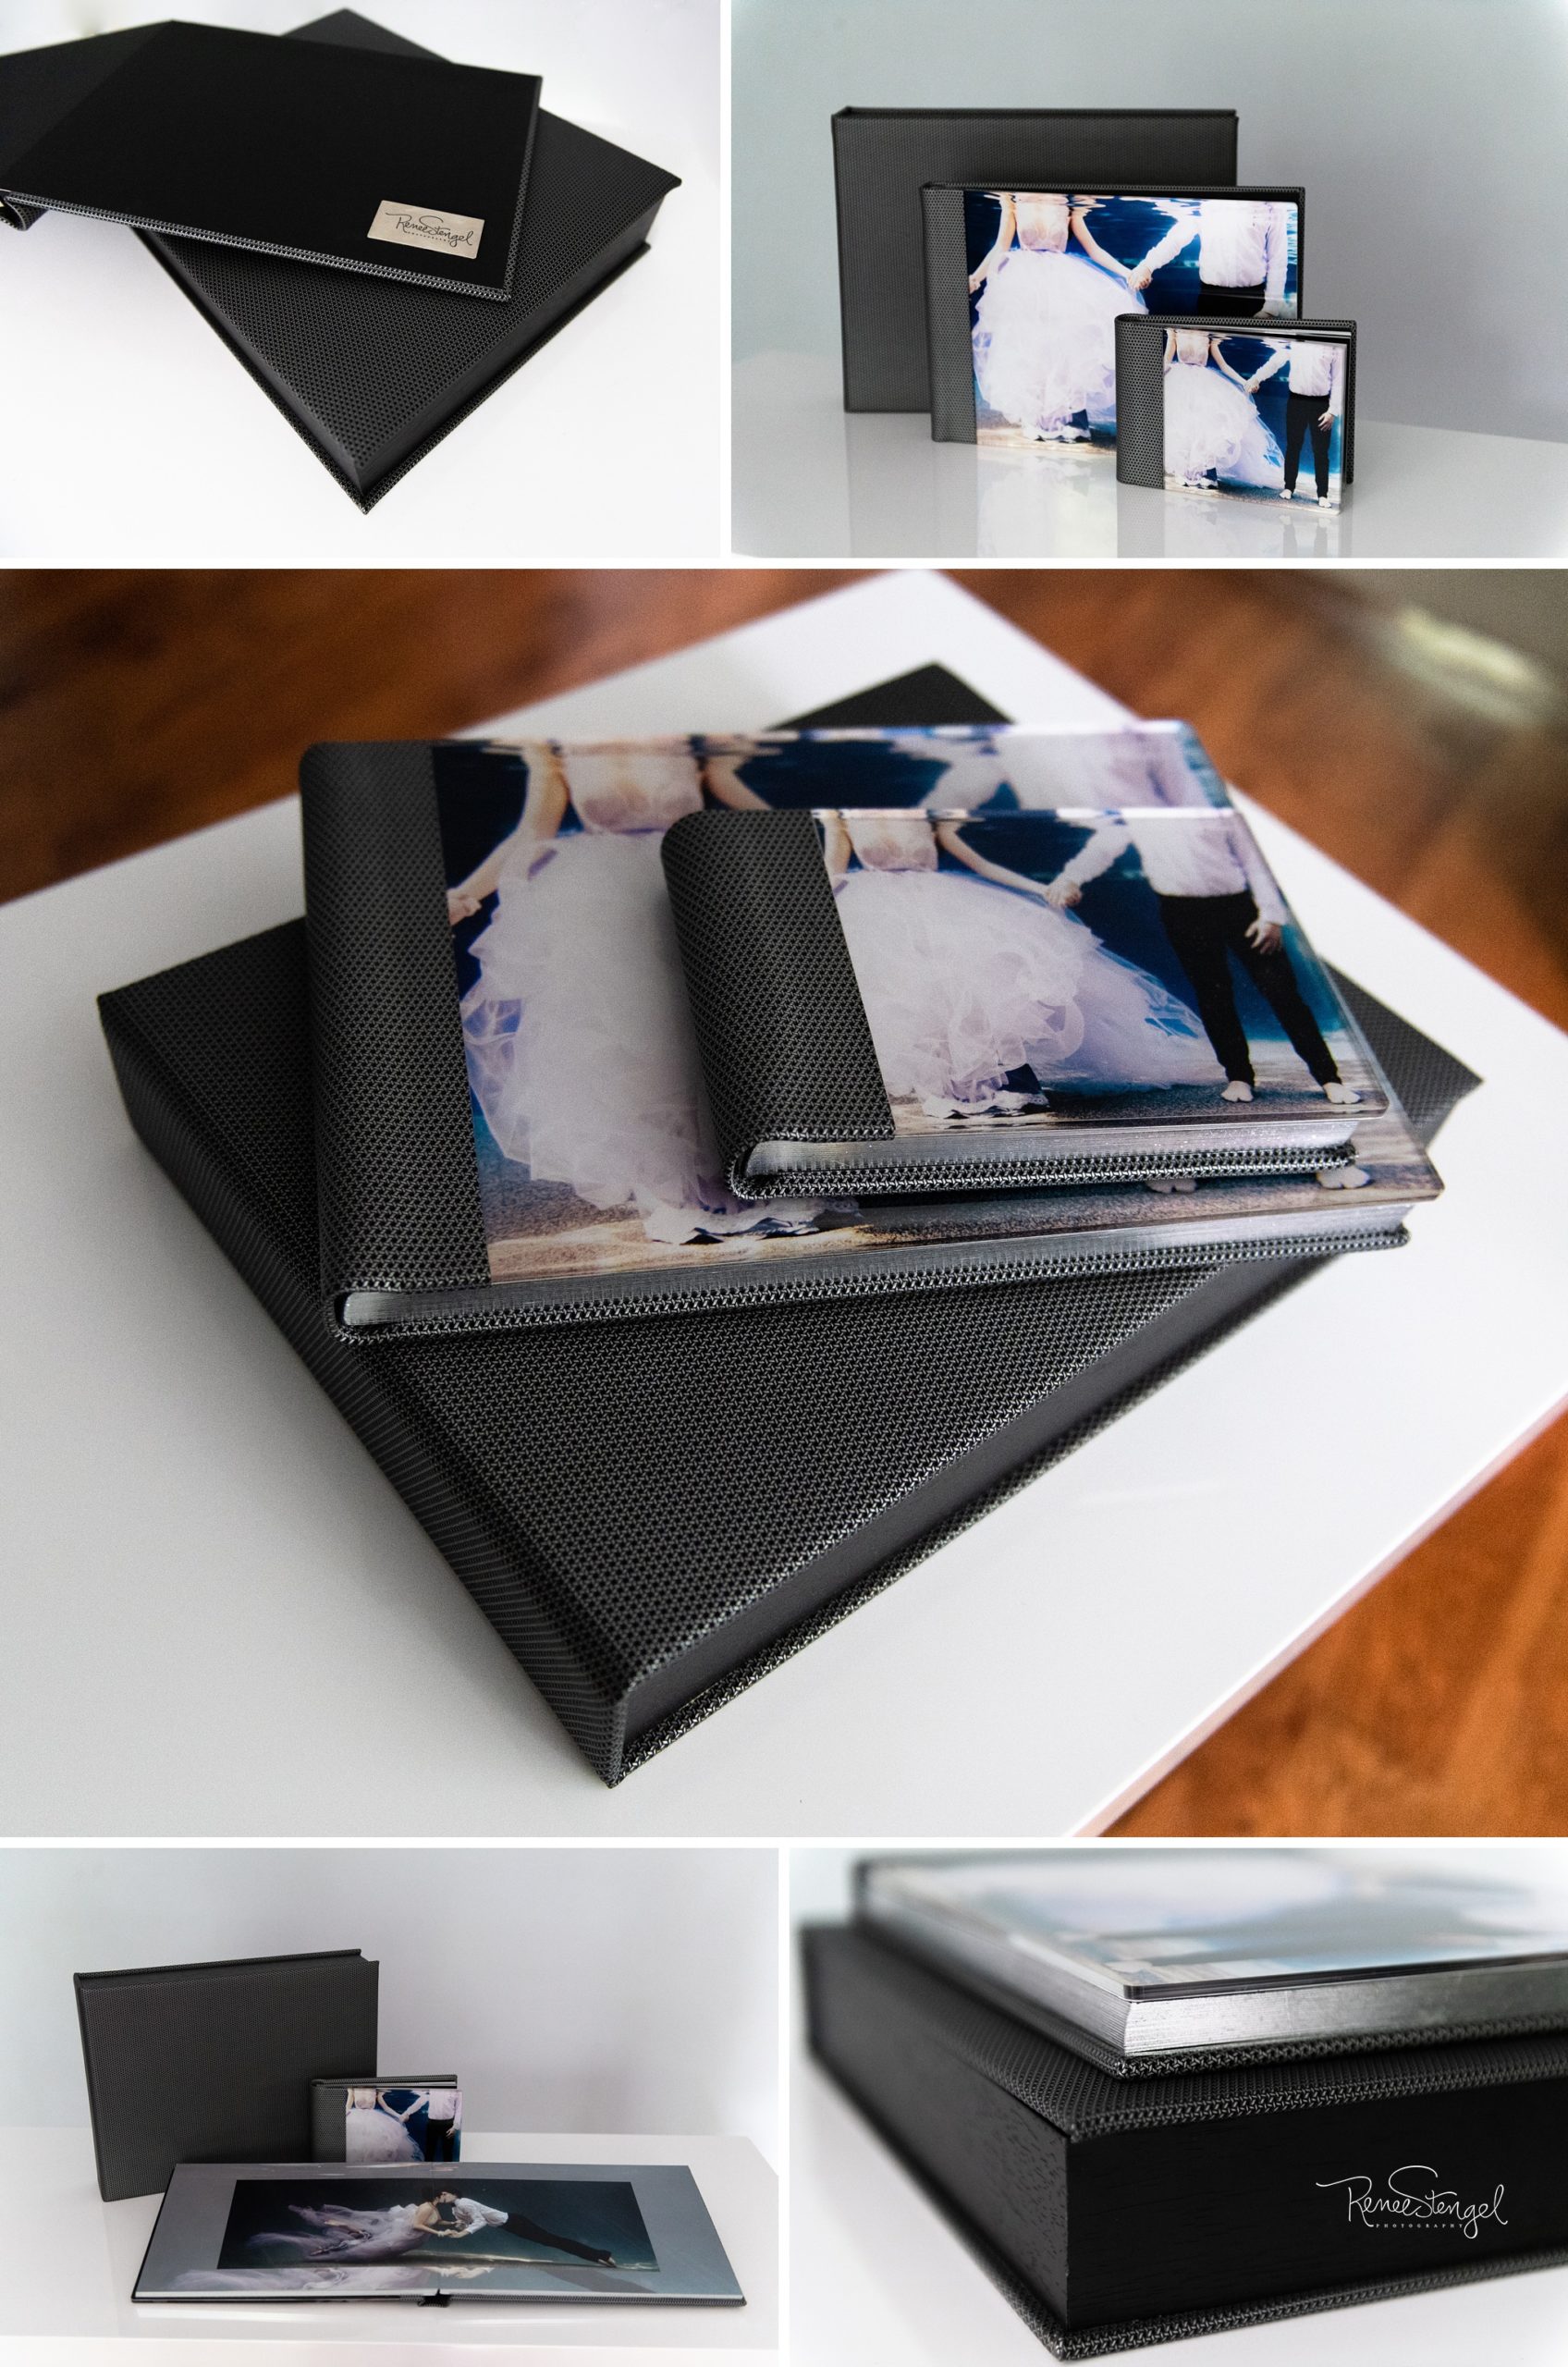 Signature Acrylic Album with matching parent album and leather Album Box